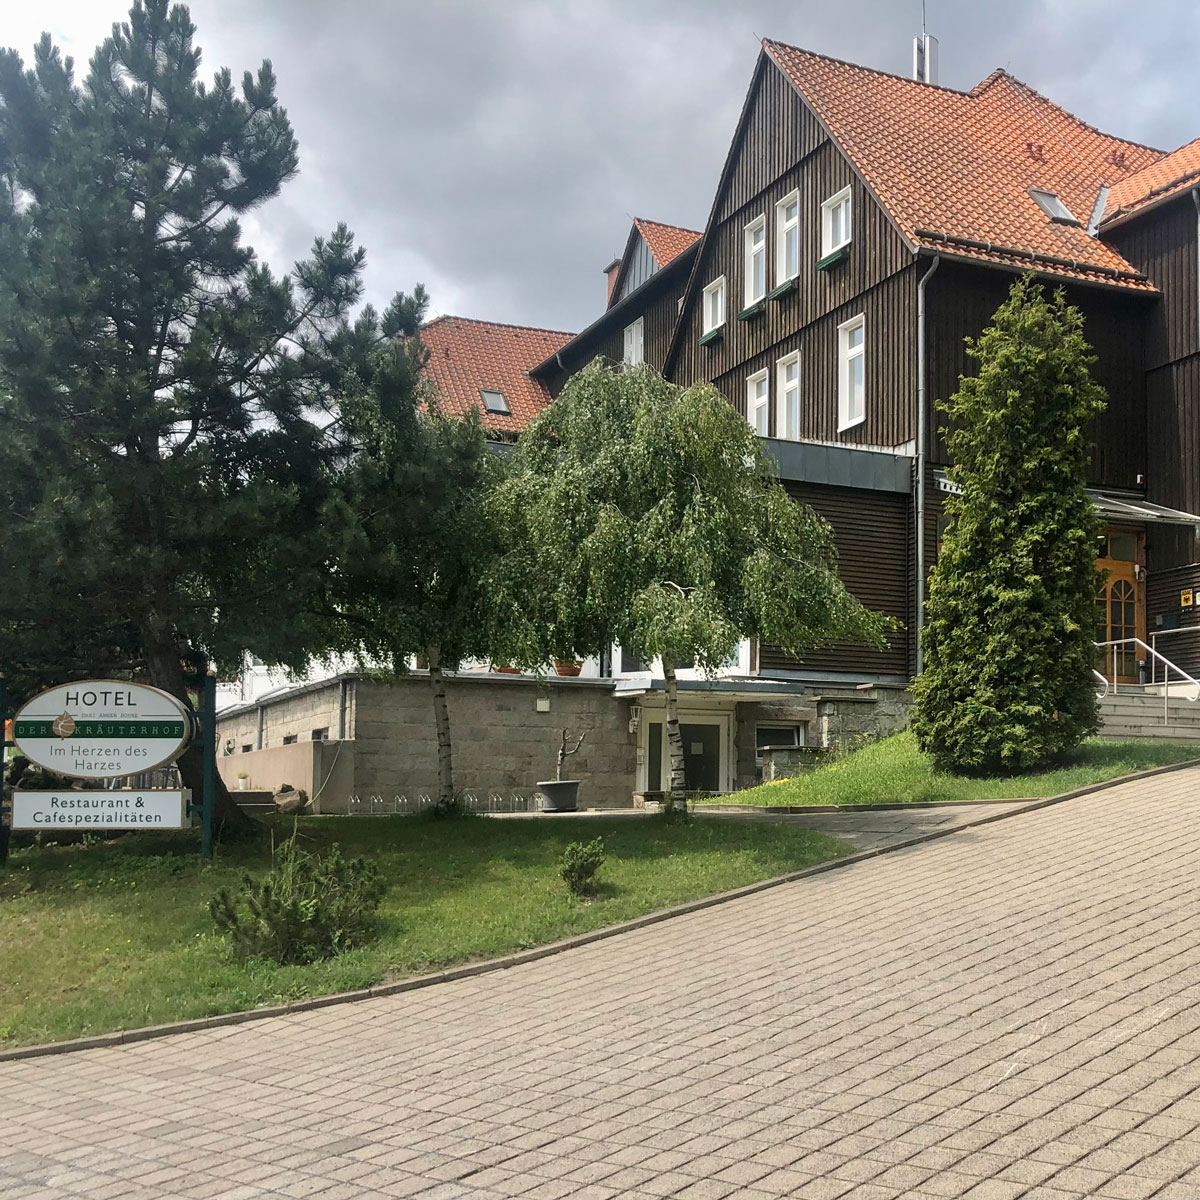 Hotel der Kräuterhof